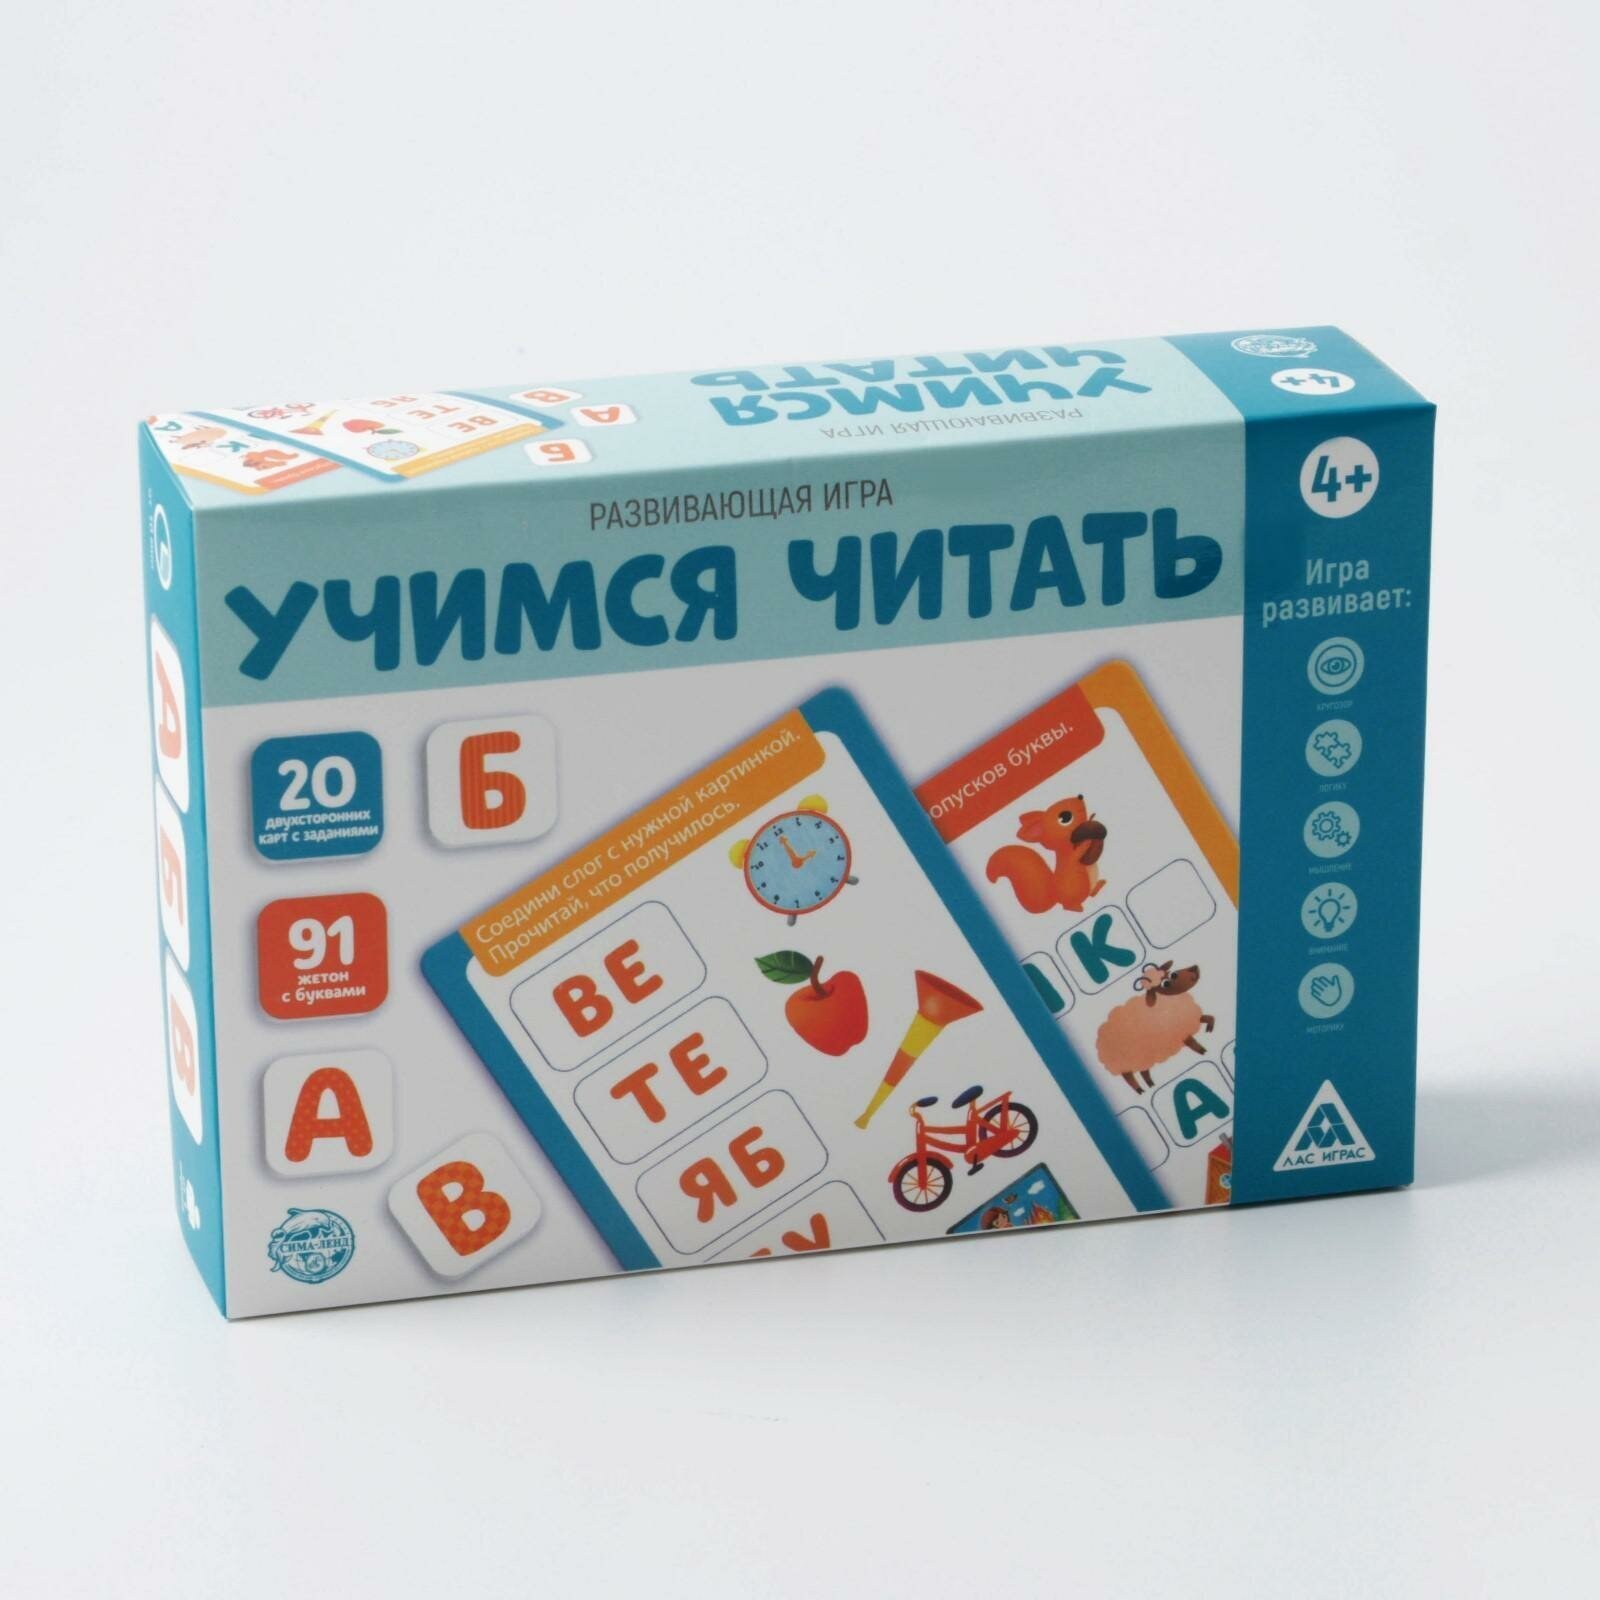 Развивающая игра ЛАС играс "Учимся читать", 20 карт, 91 жетон с буквами, маркер, от 4 лет